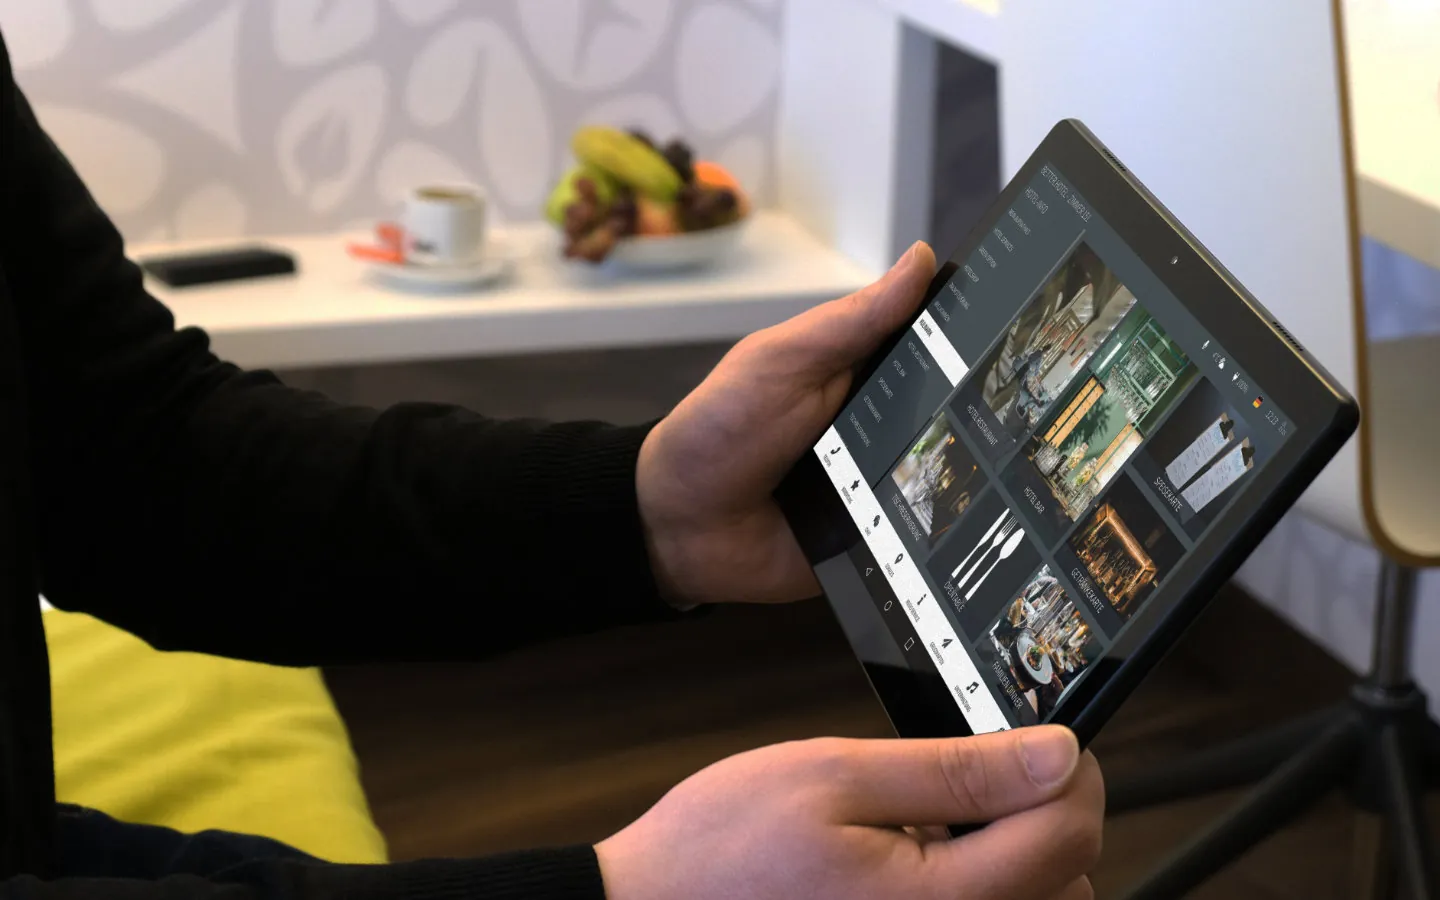 Hotelgast nutz die digitale Gästemappe im Hotelzimmer